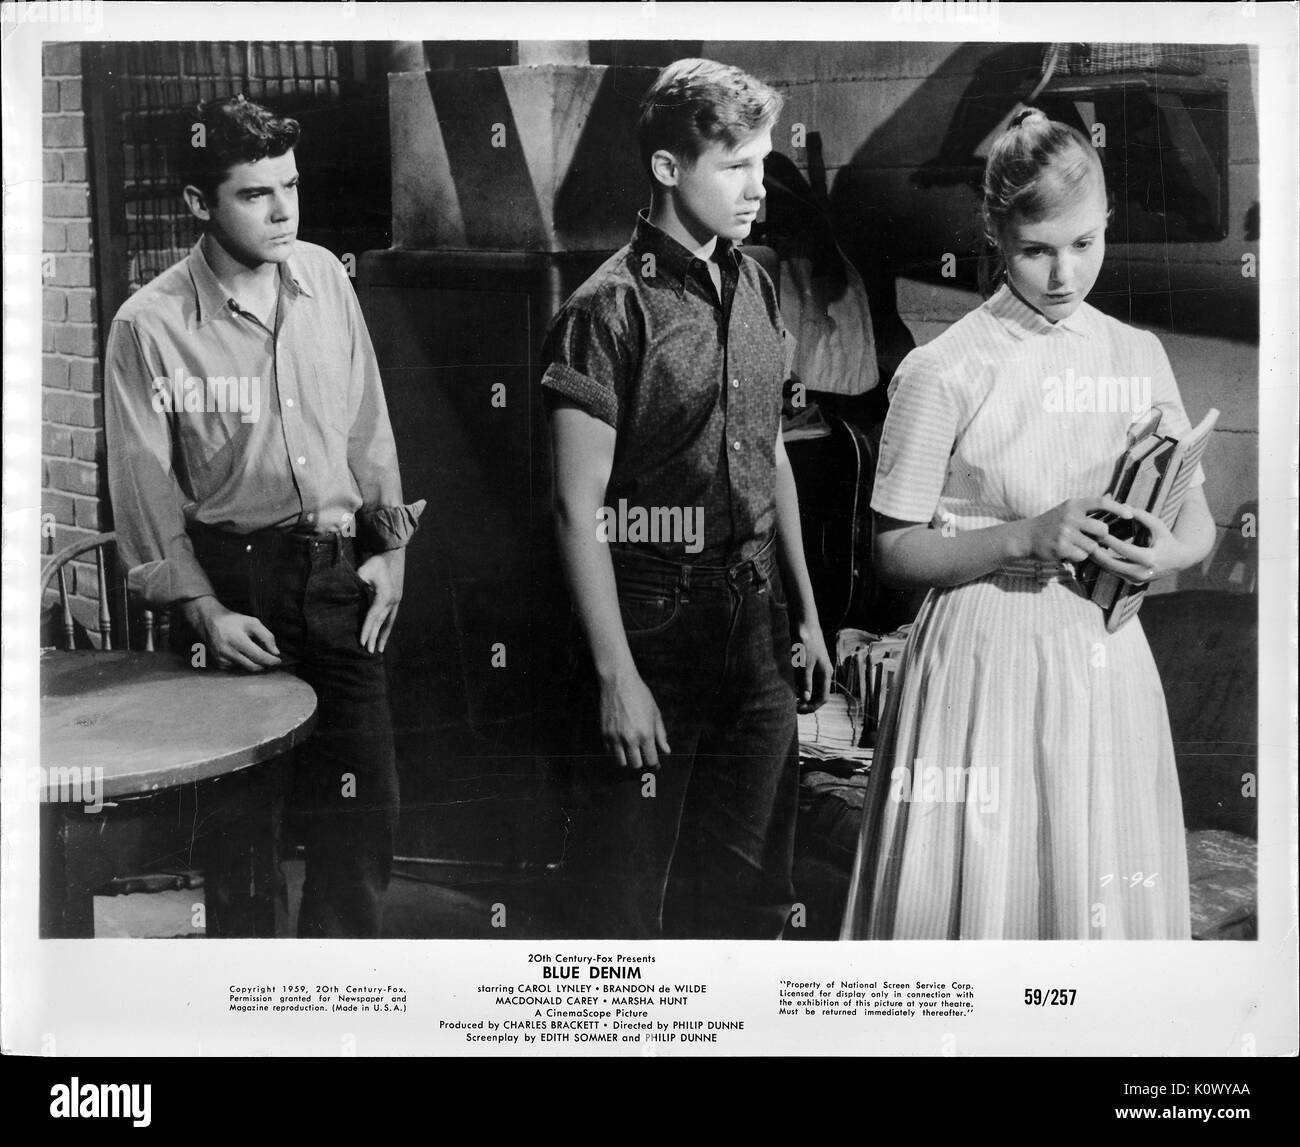 Una escena de la película todavía 'Blue Jeans' (1959 20th Century Fox Film), mostrando tres adolescentes con aspecto serio de pie, una chica y dos chicos, con la chica mirando hacia abajo mientras escucha el muchacho explicando algo detrás de ella y el otro chico en camisa de manga larga mirando, 1959. Foto de stock